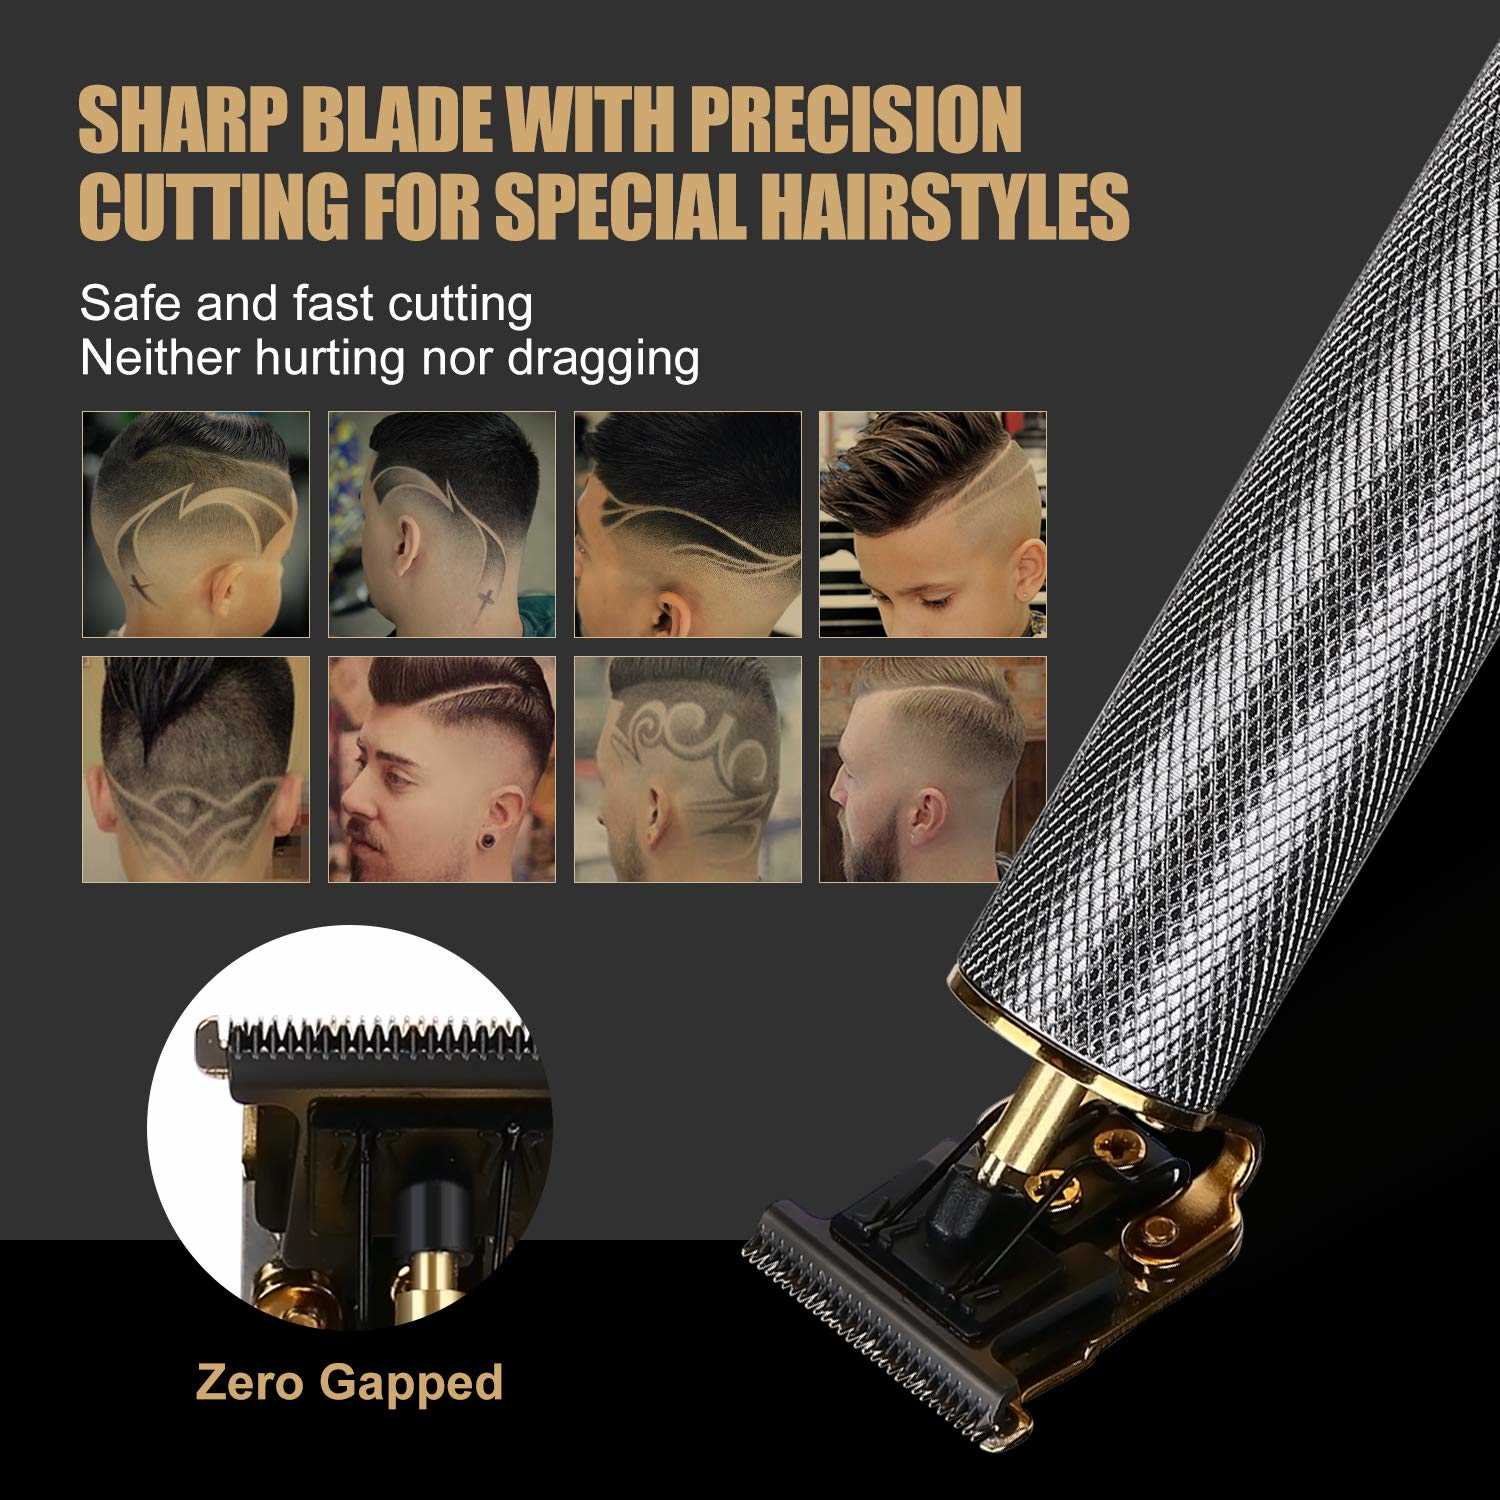 Pro Li Outliner Grooming Kit عن كثب T-Blade Zero Gapped Detail Detail ماكينة حلاقة الذقن - 6 